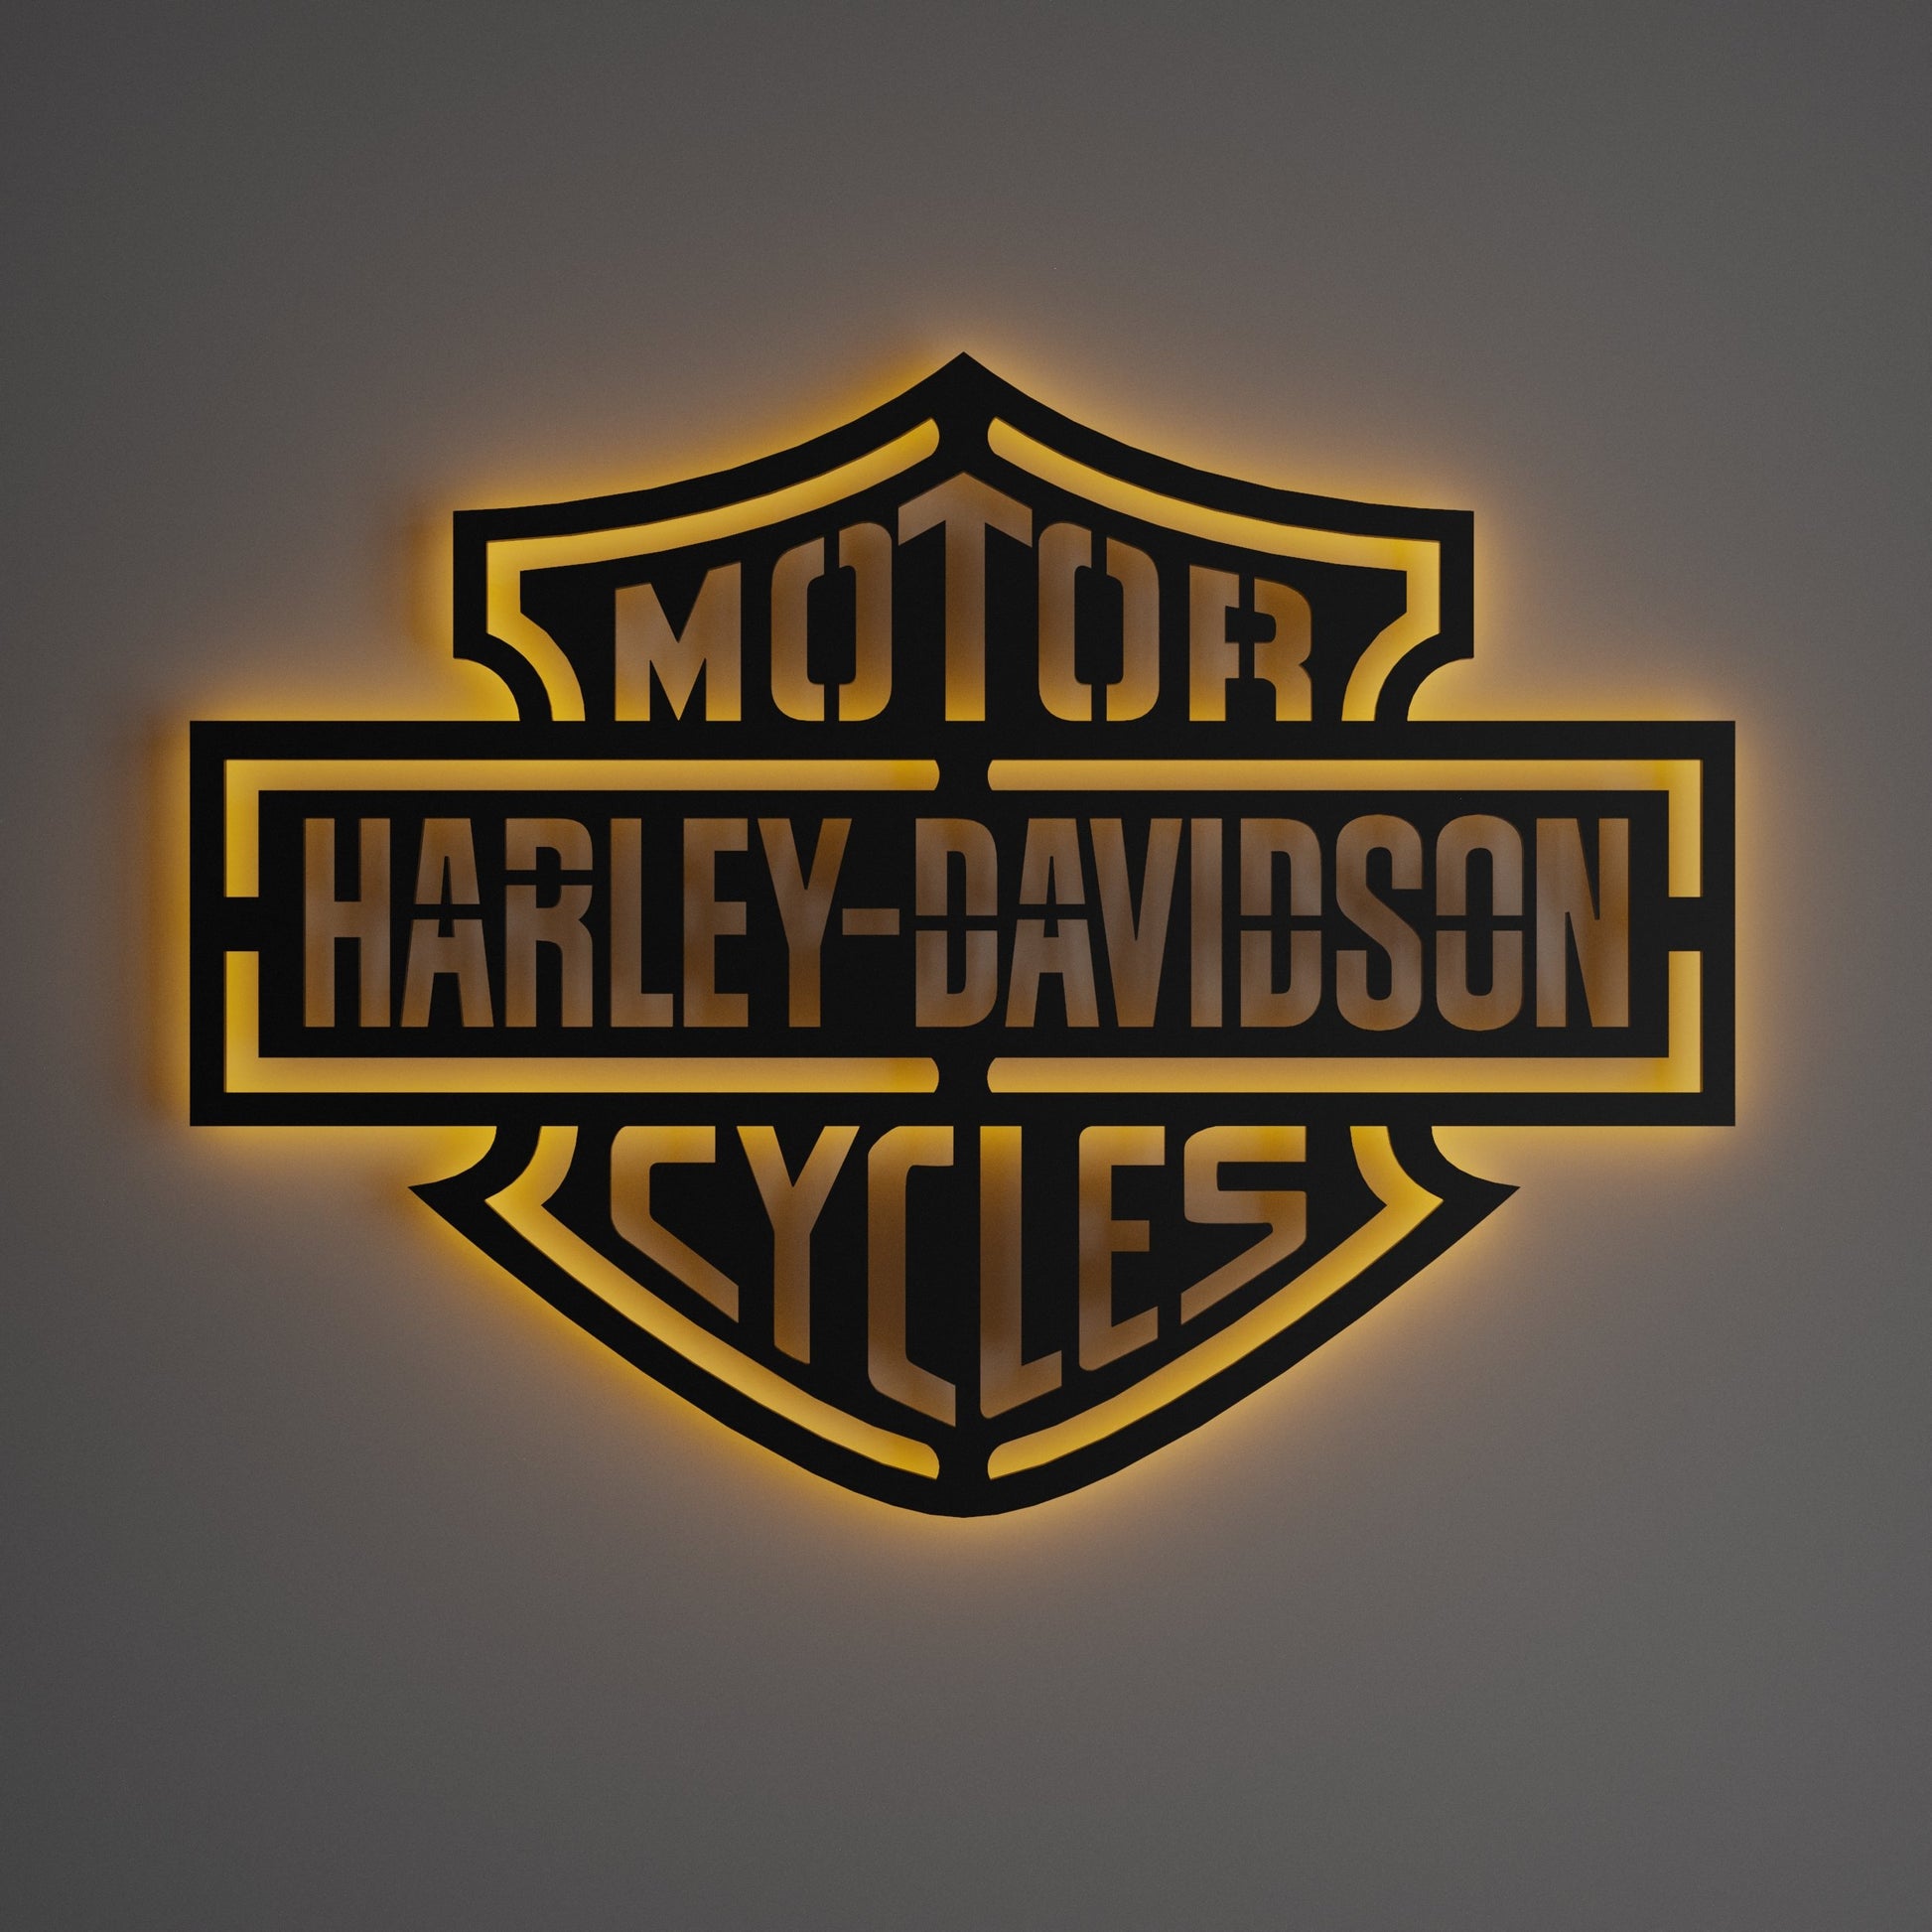 Harley Davidson Standard Wall Sign - Kutalp